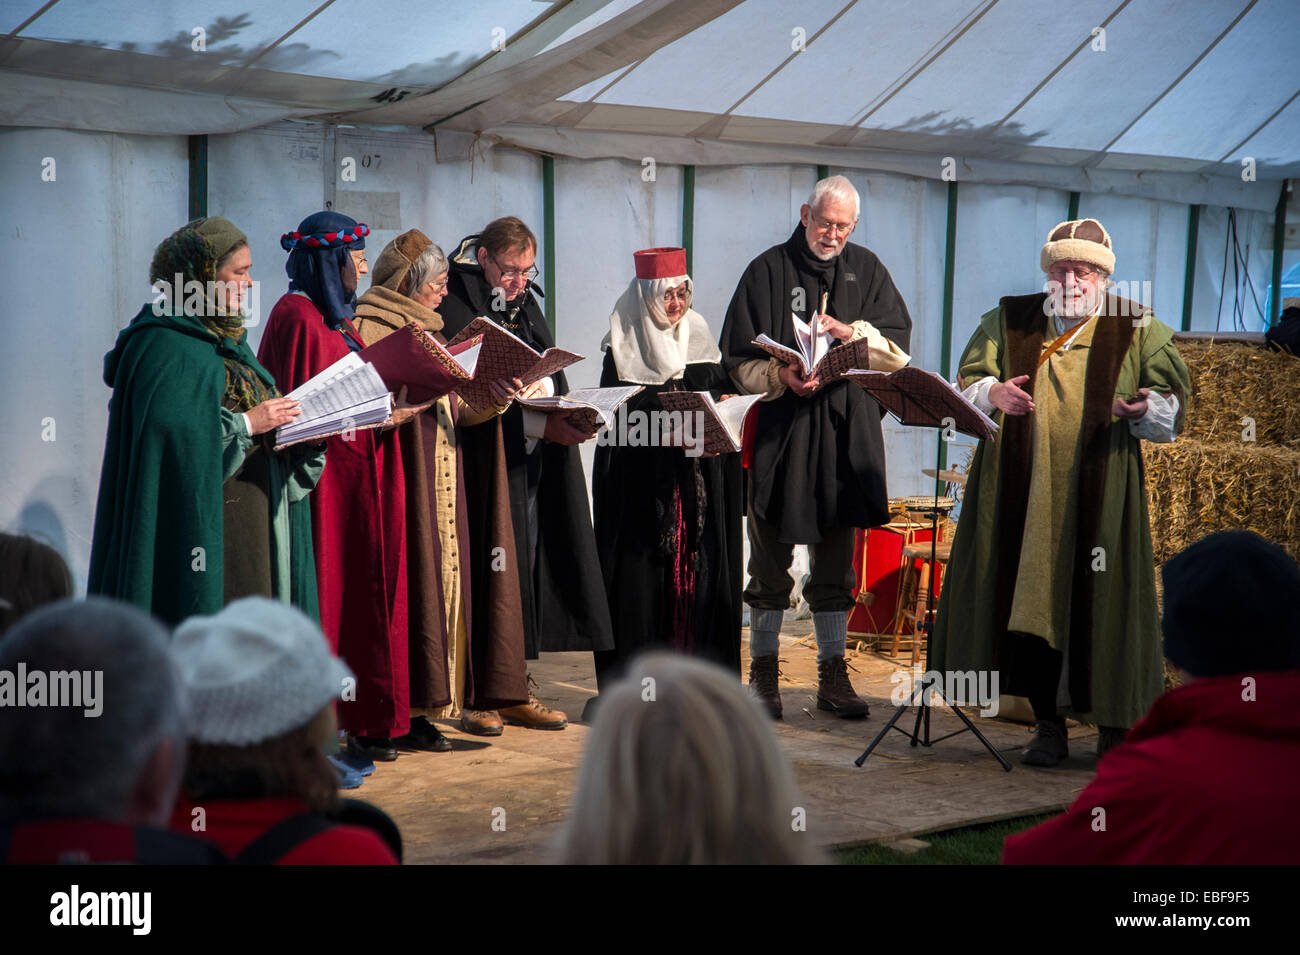 Une chorale sur scène en costume médiéval au château de Ludlow Noël Nourriture et foire artisanale Banque D'Images